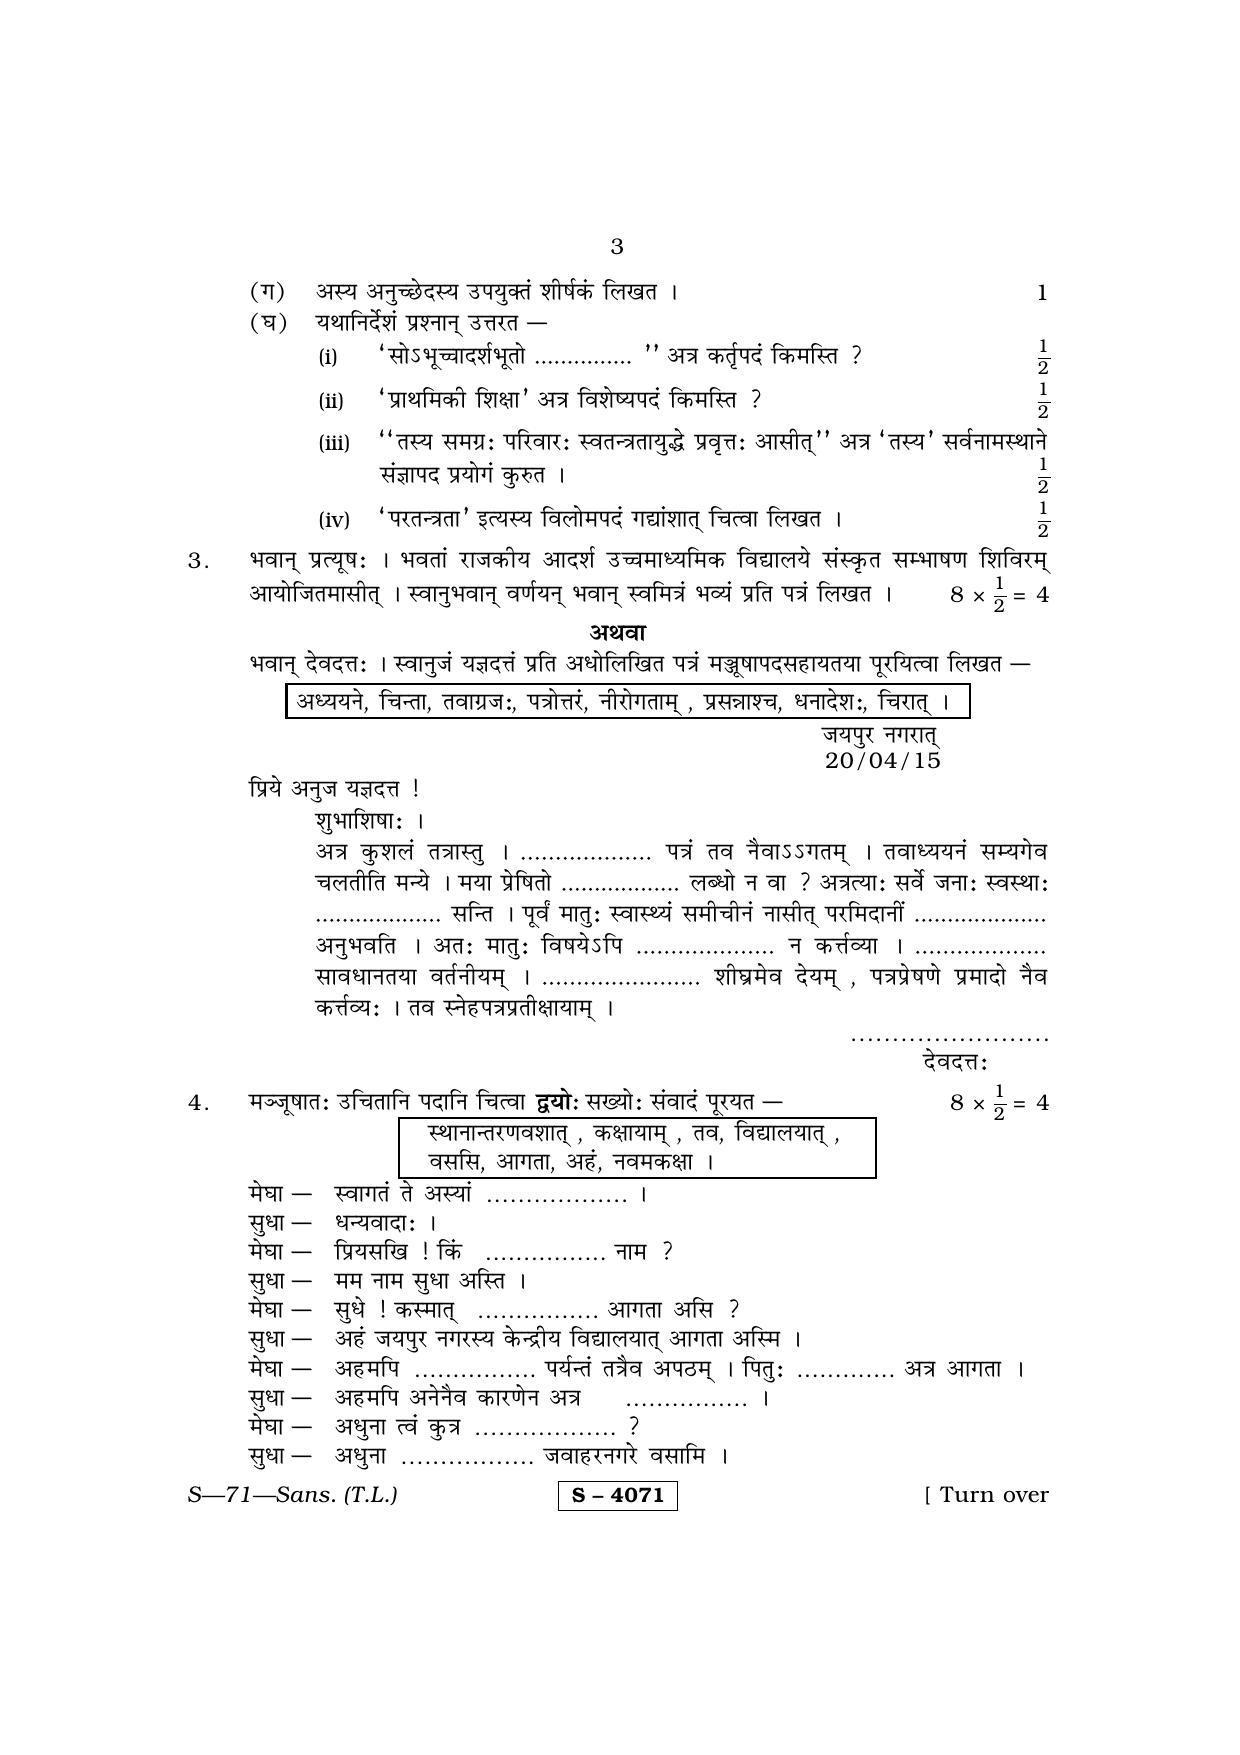 RBSE Class 10 Sanskrit (T.L.) 2015 Question Paper - Page 3